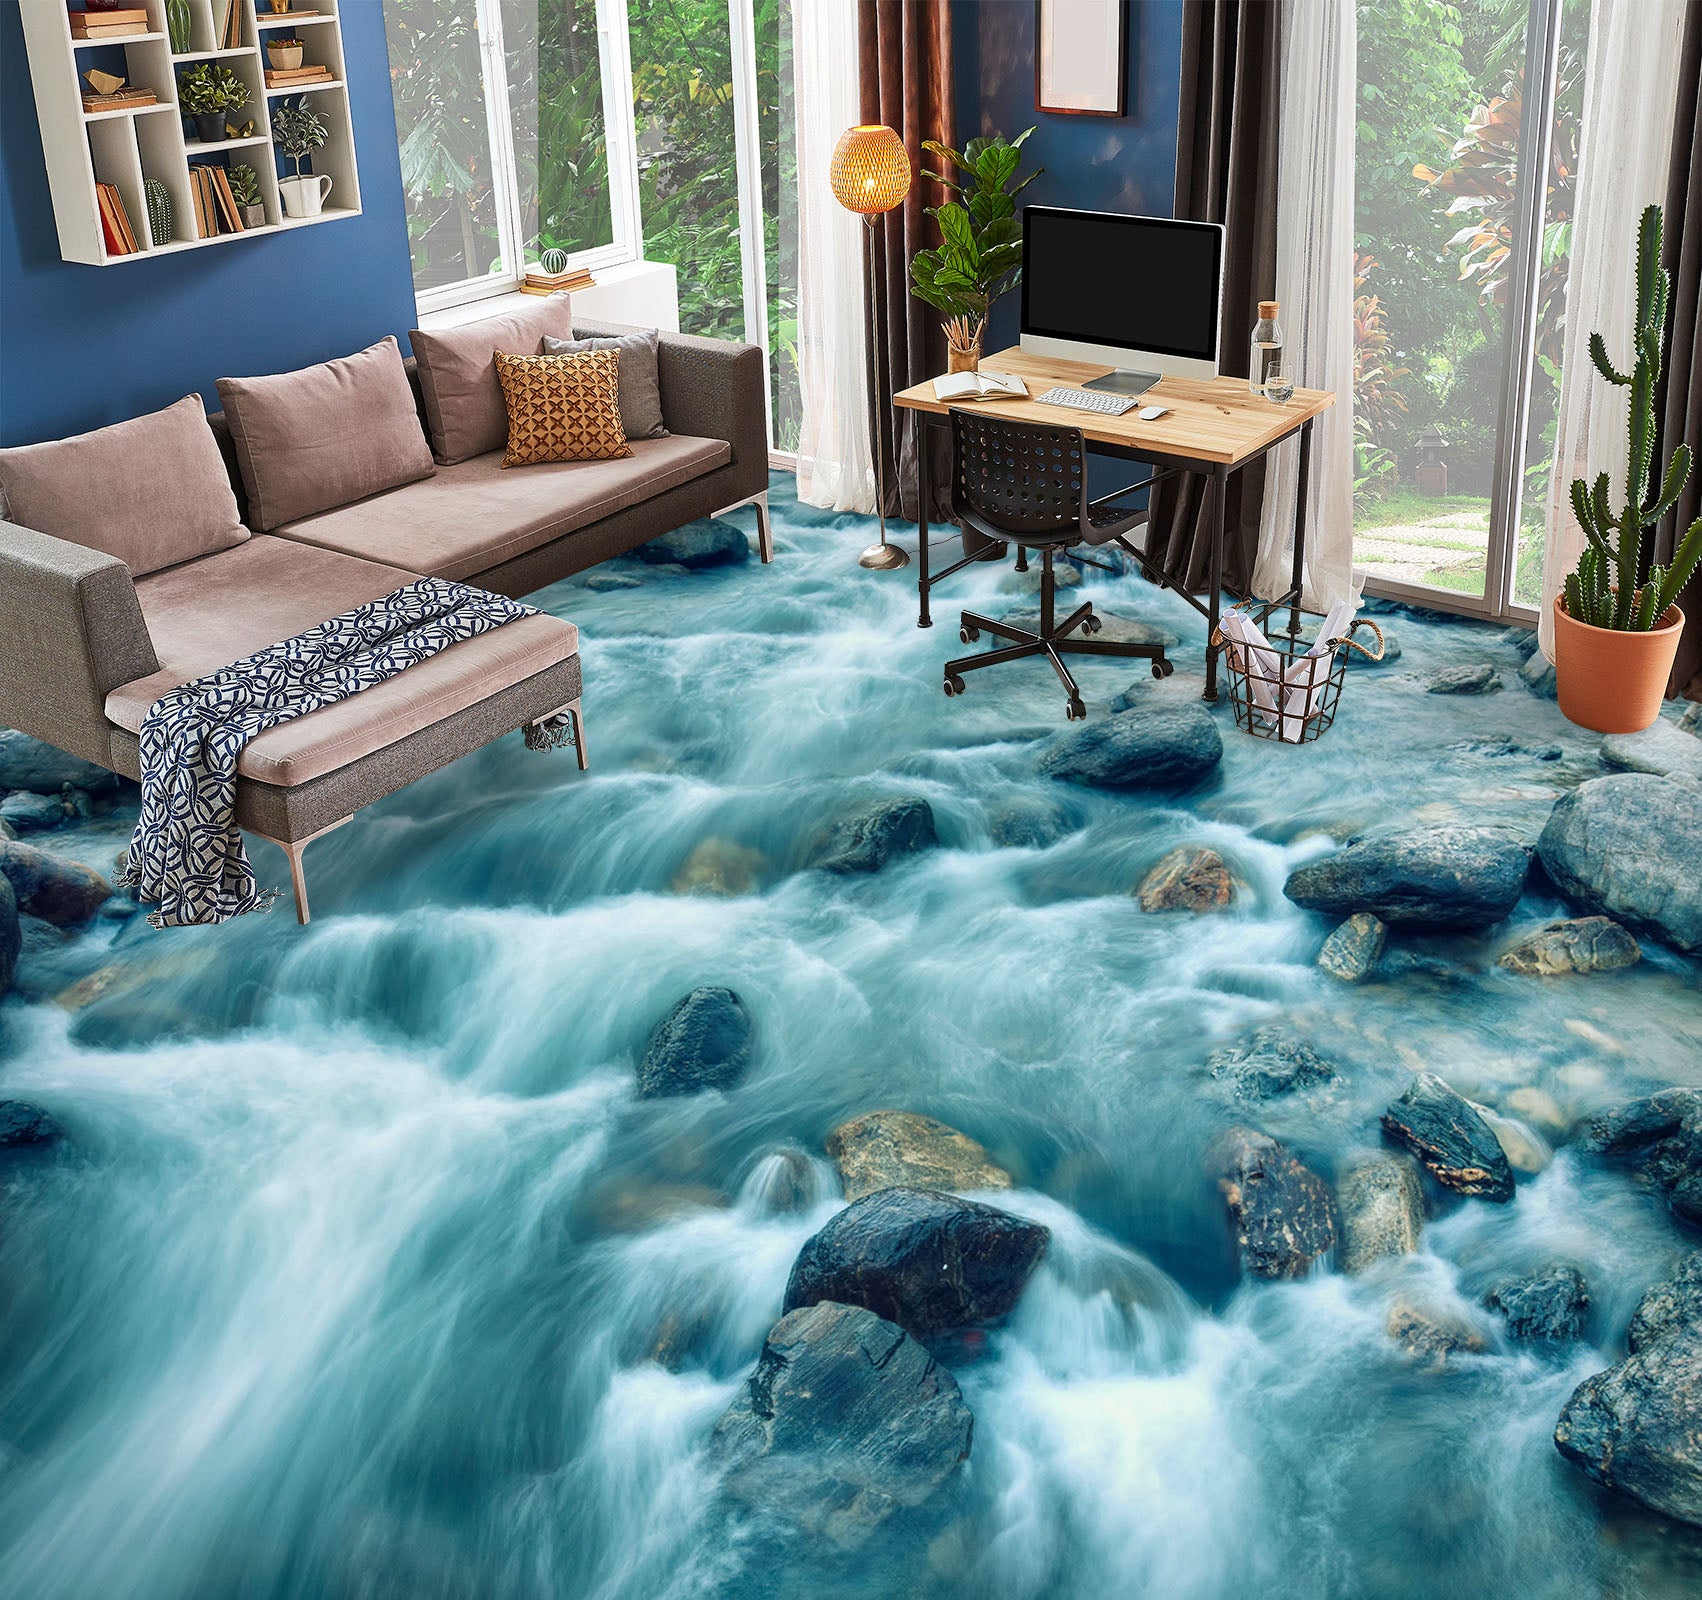 3D Turbulent Flowing Water 813 Floor Mural  Wallpaper Murals Rug & Mat Print Epoxy waterproof bath floor